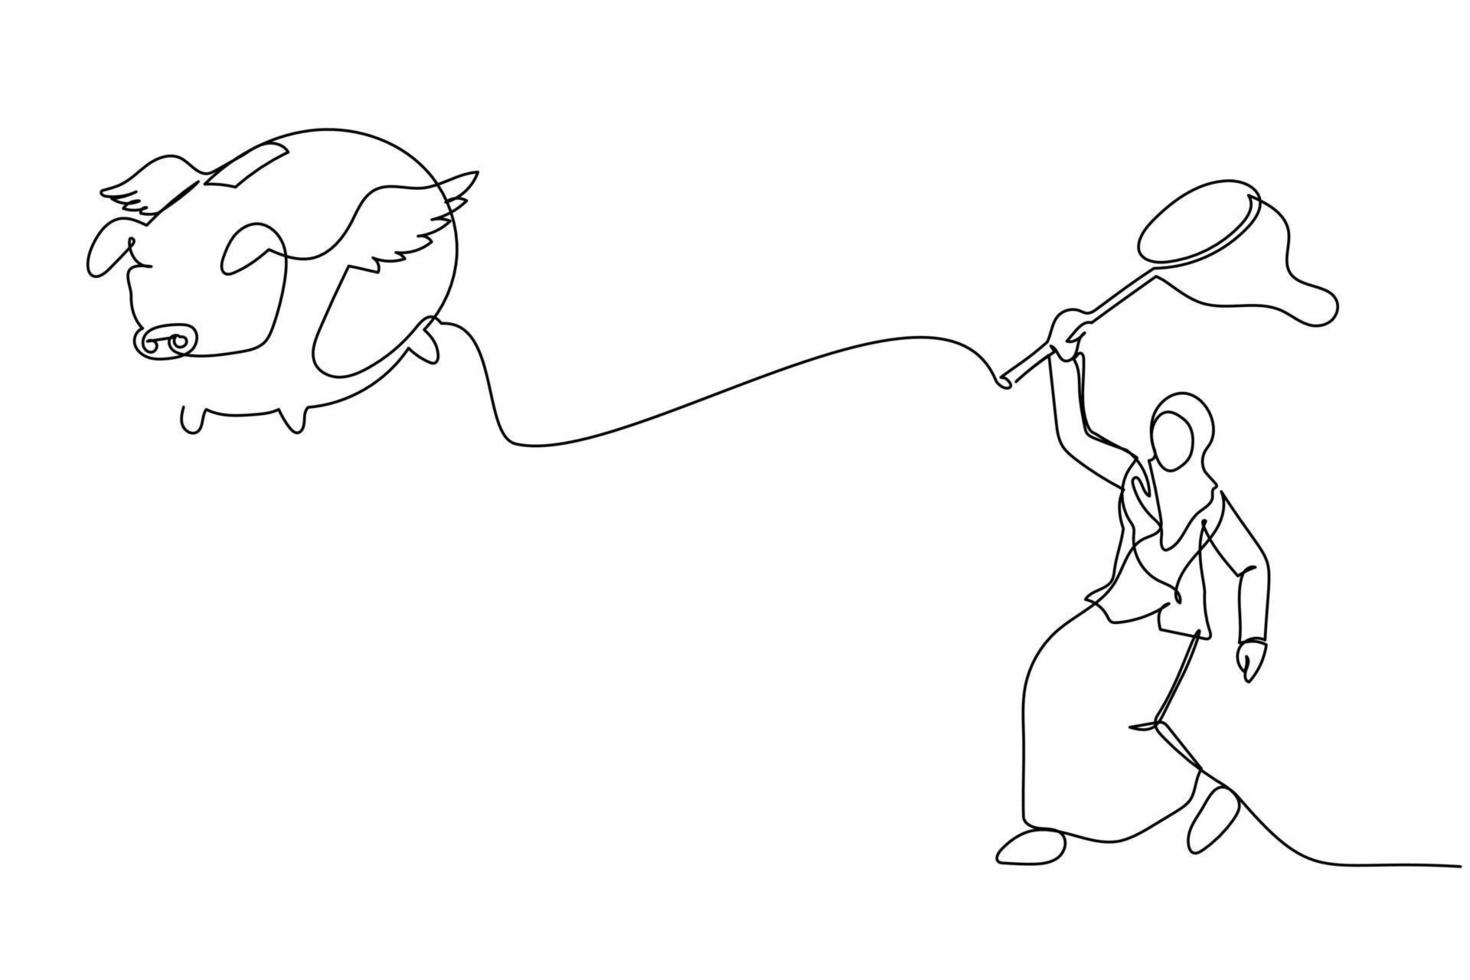 una sola línea continua dibujando una mujer de negocios árabe intenta atrapar una alcancía voladora con una red de mariposas. ahorros futuros perdidos debido a la crisis económica. ilustración de vector de diseño gráfico de dibujo de una línea